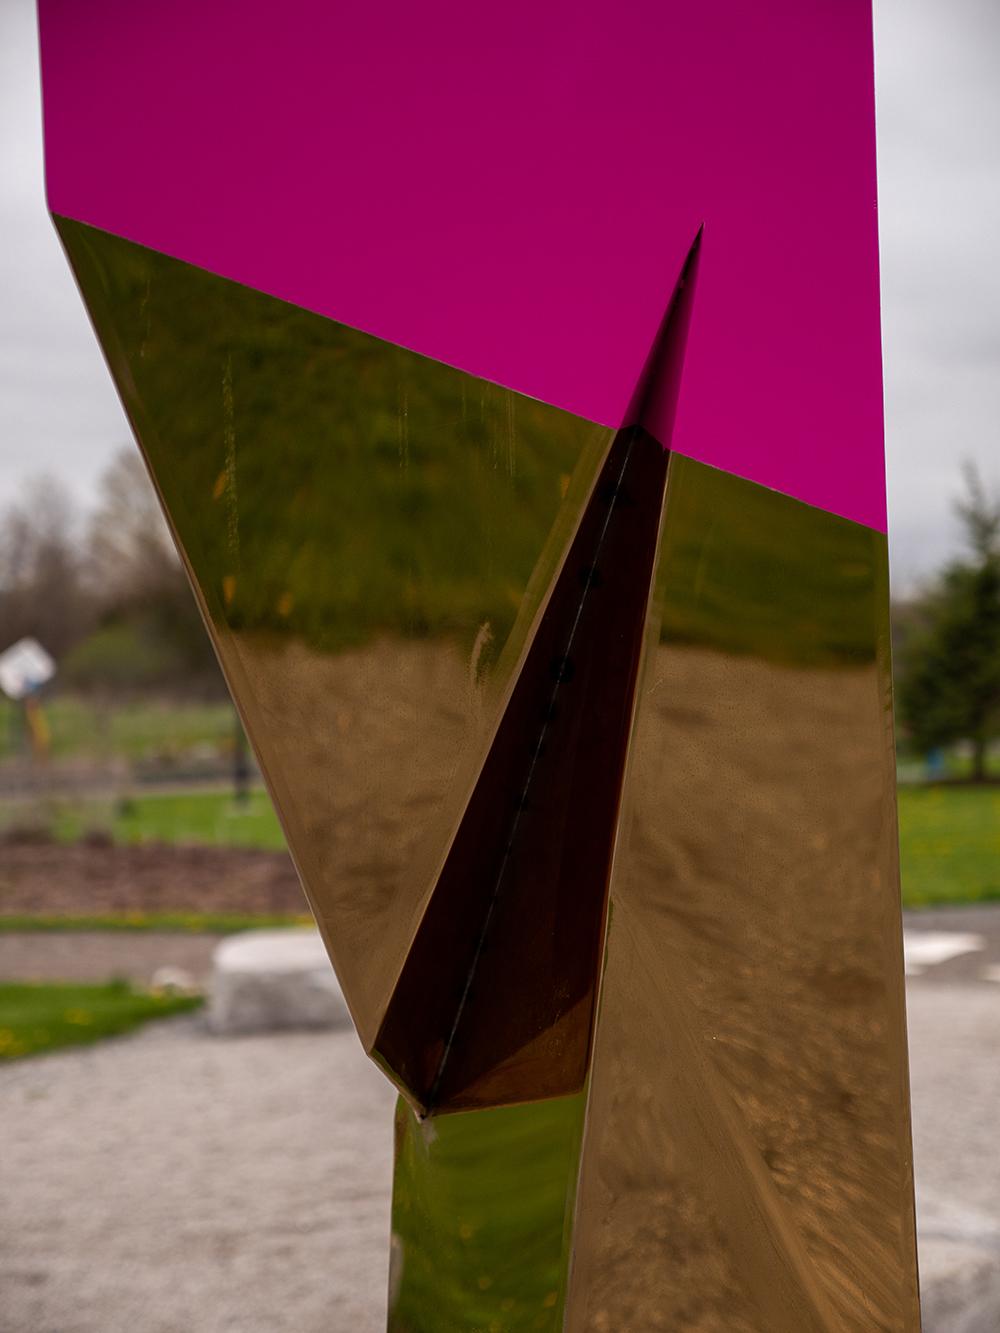 Cette sculpture extérieure de Viktor Mitic, hautement réfléchissante et plaquée or, est visible de loin en plein soleil. Créée à partir de rendus 3D d'angles aigus, la forme prend une apparence ailée. La colonne des résumés est unique et non éditée.